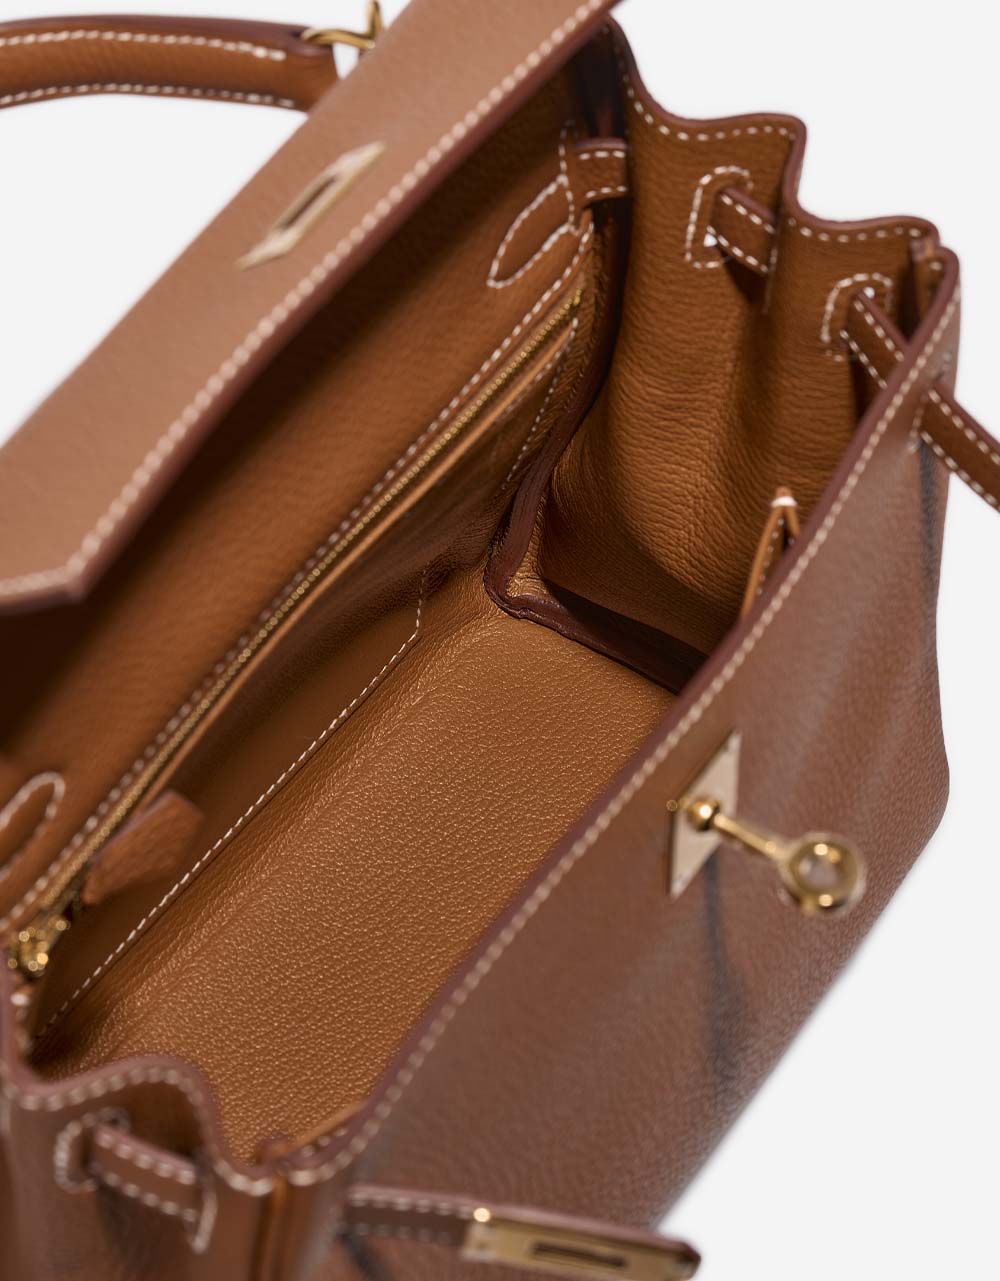 Hermès Kelly 25 Gold Inside | Verkaufen Sie Ihre Designertasche auf Saclab.com